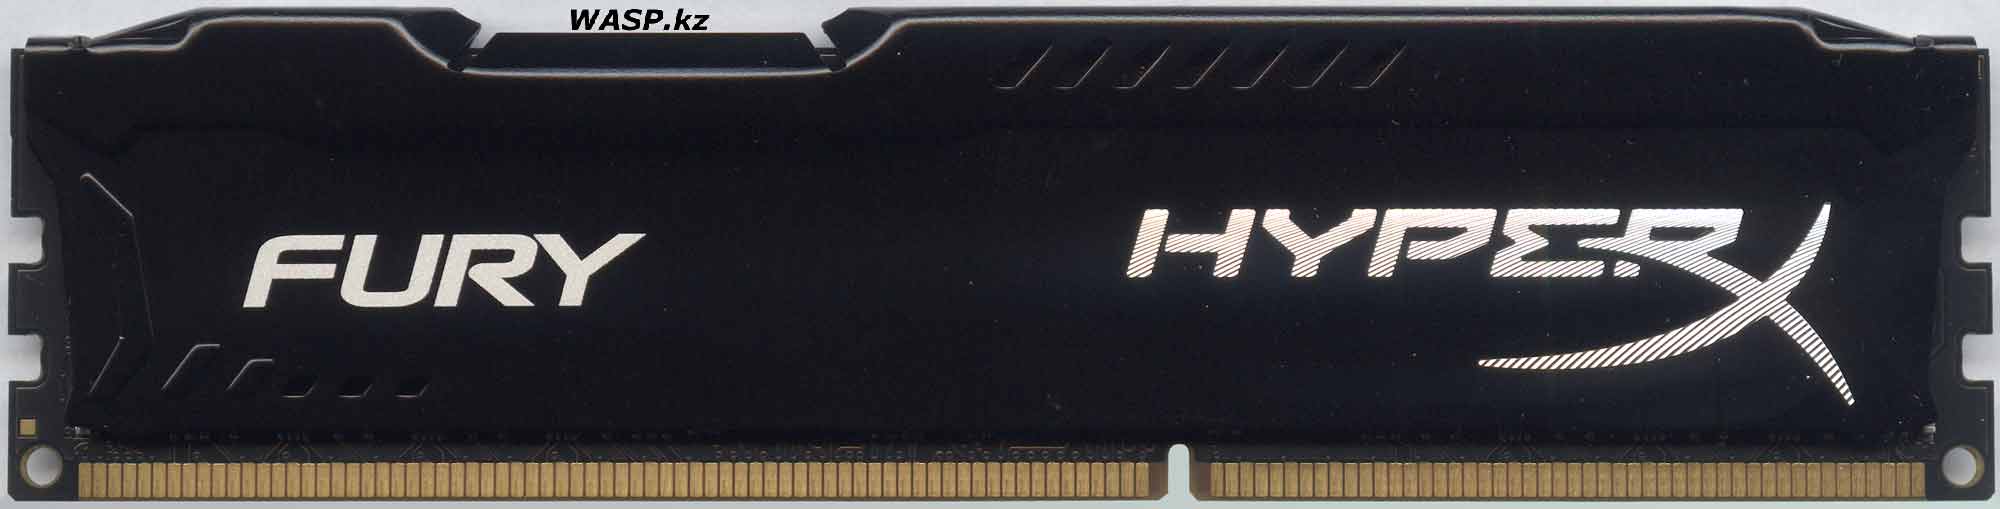 Kingston HyperX Fury HX318C10FB/8 память DDR3 8Гб 1866 МГц